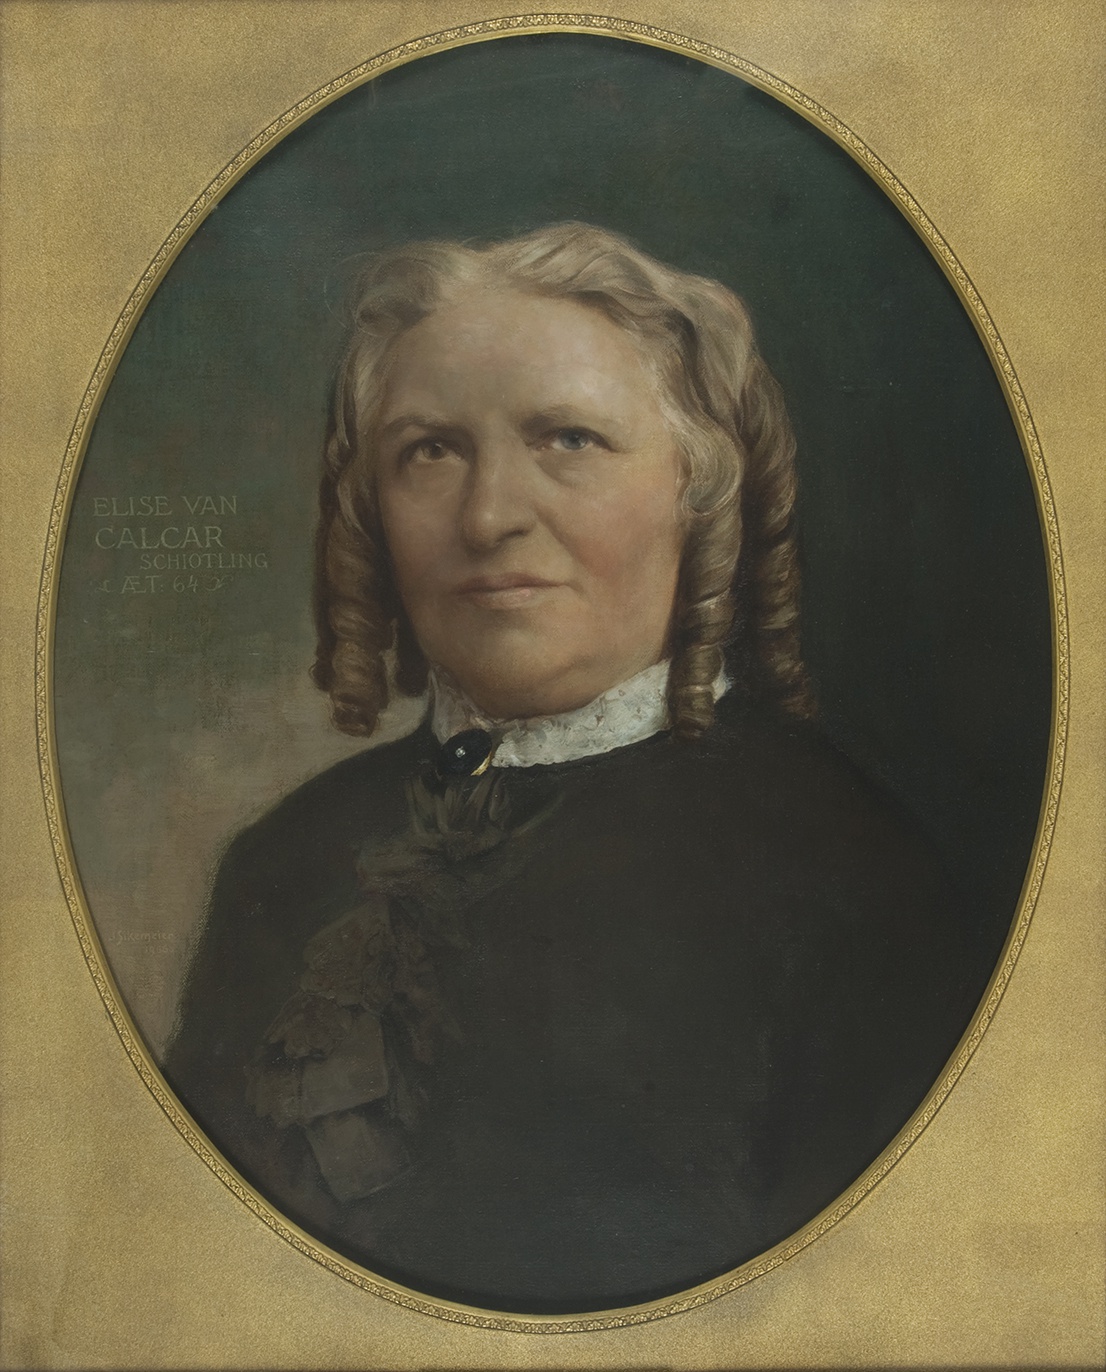 De afbeelding toont een kunstzinnig portret van Elise van Calcar. Gemaakt door: J.H. Sikemeier 